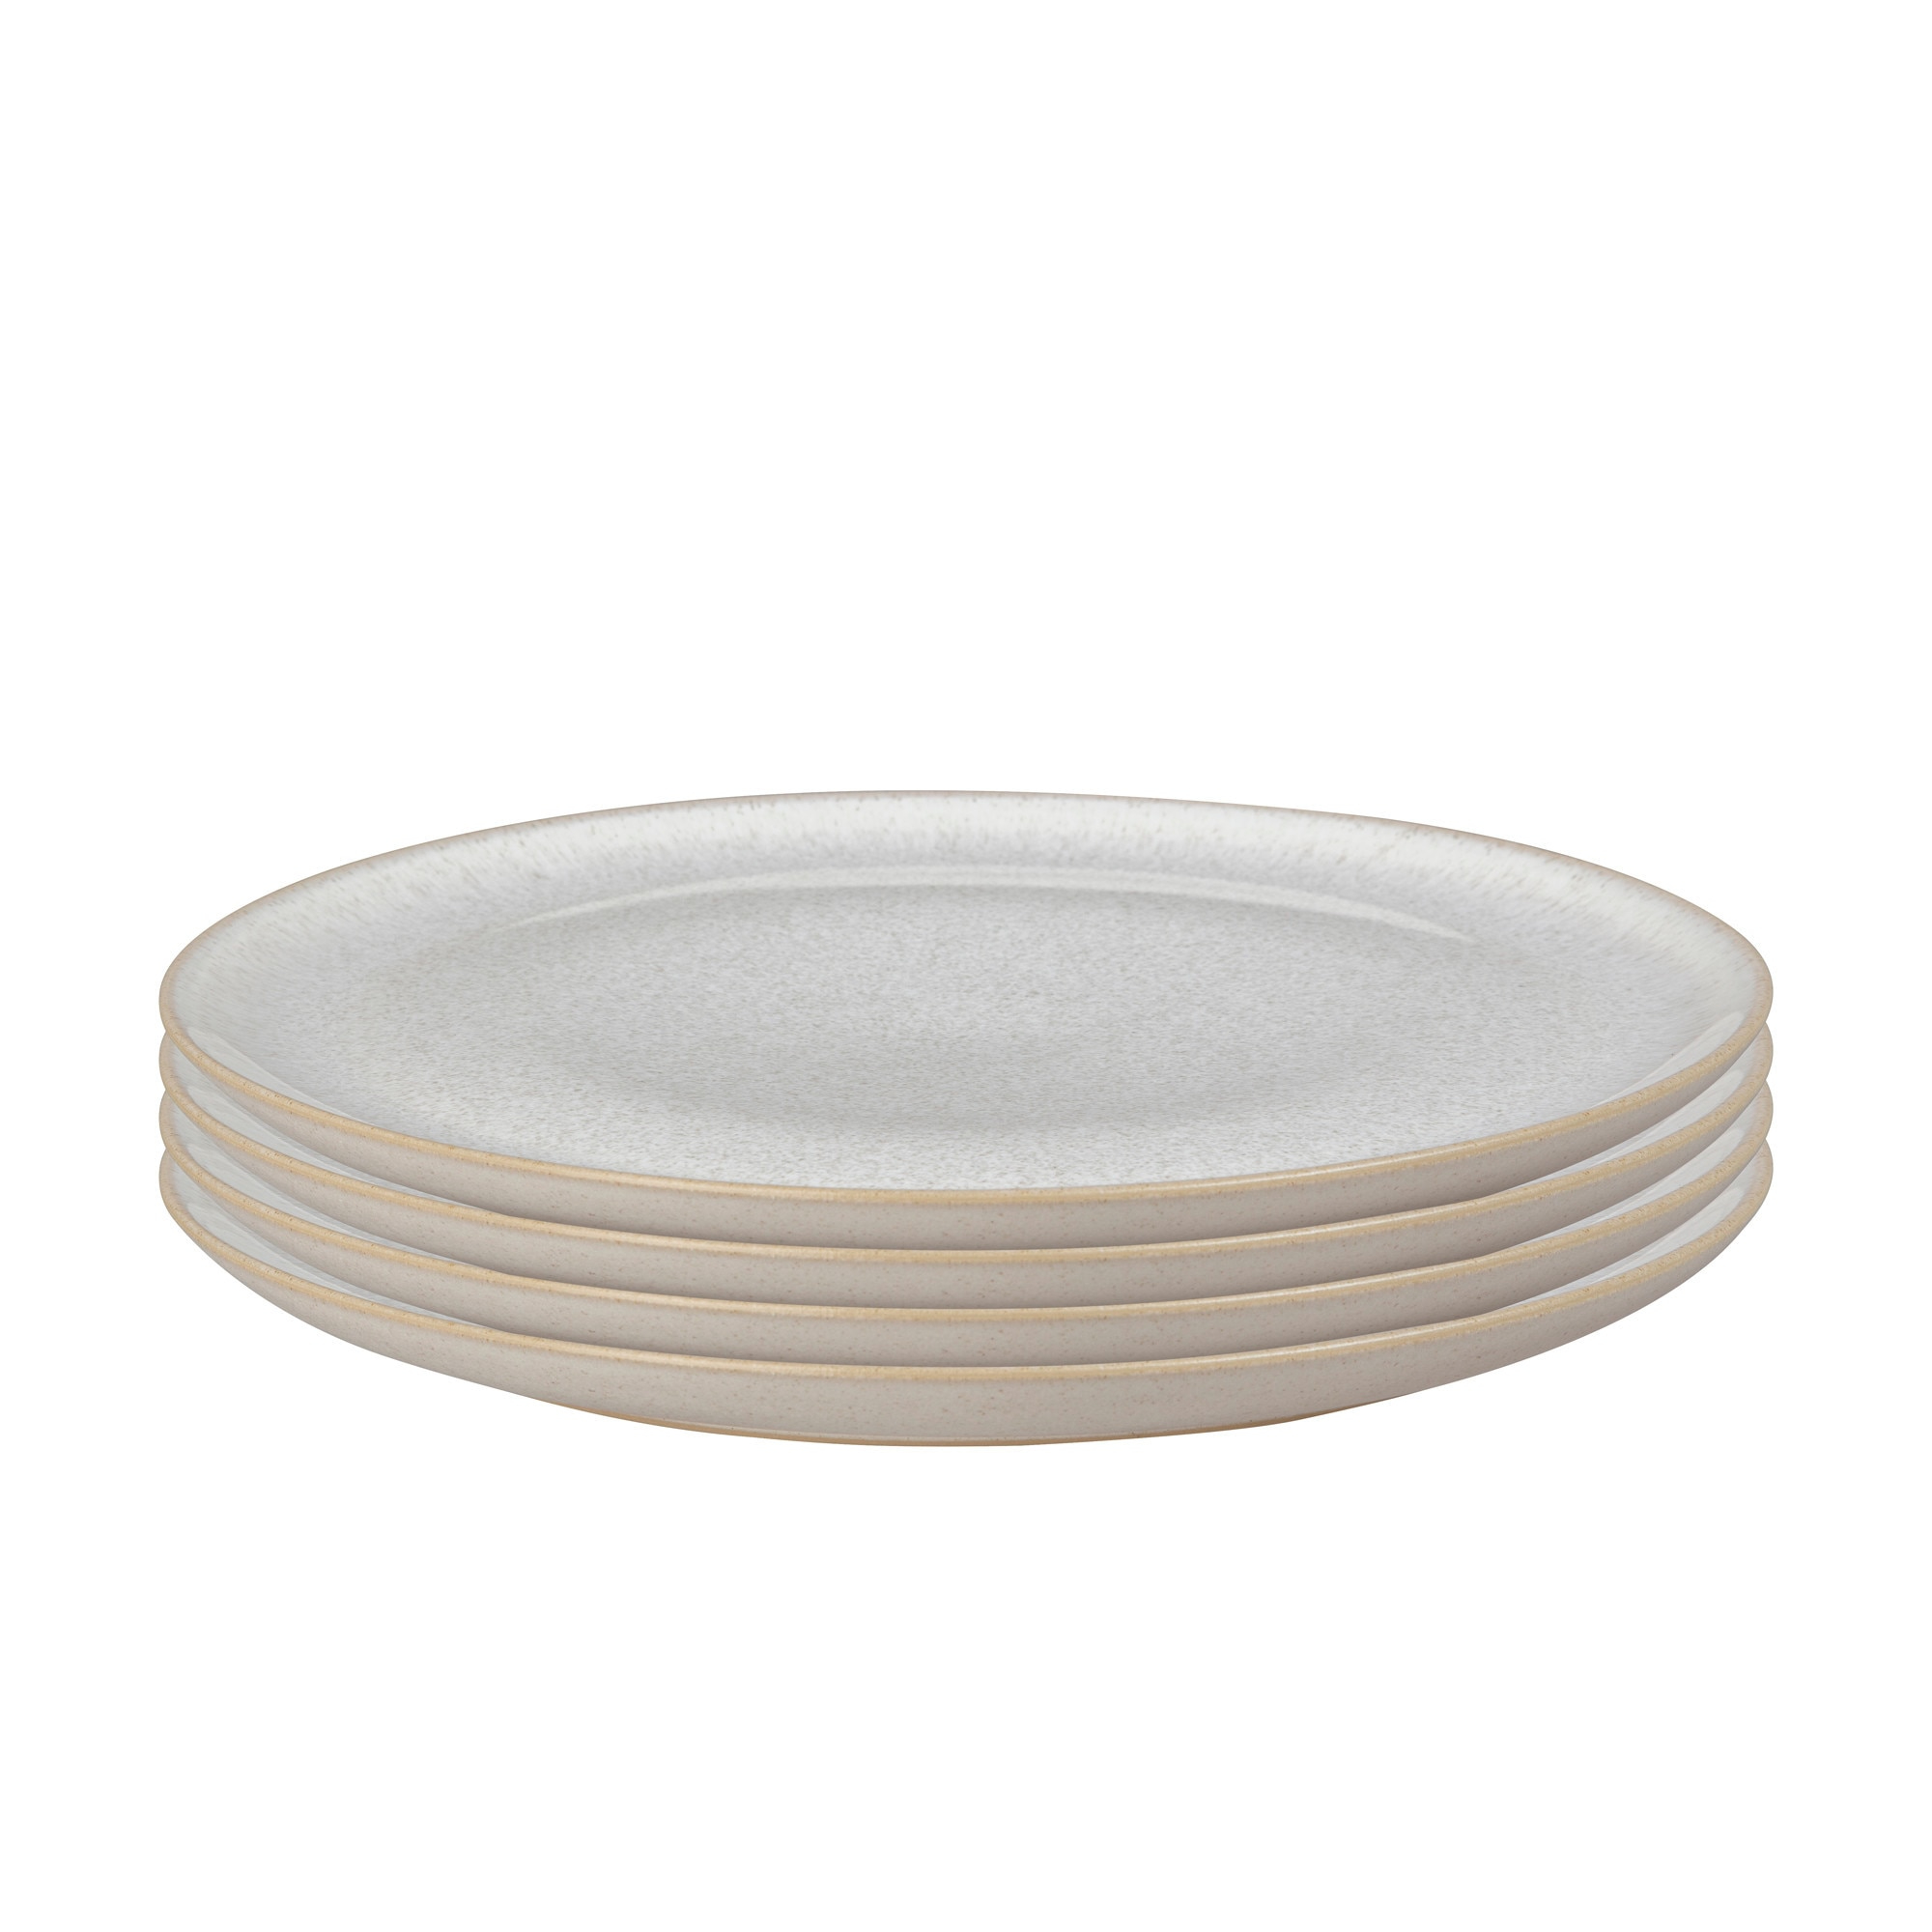 Набор тарелок Denby Modus Speckle 27,5 см 4 шт набор для соли и перца 7 см керамика молочный в крапинку полевые ы meadow speckled